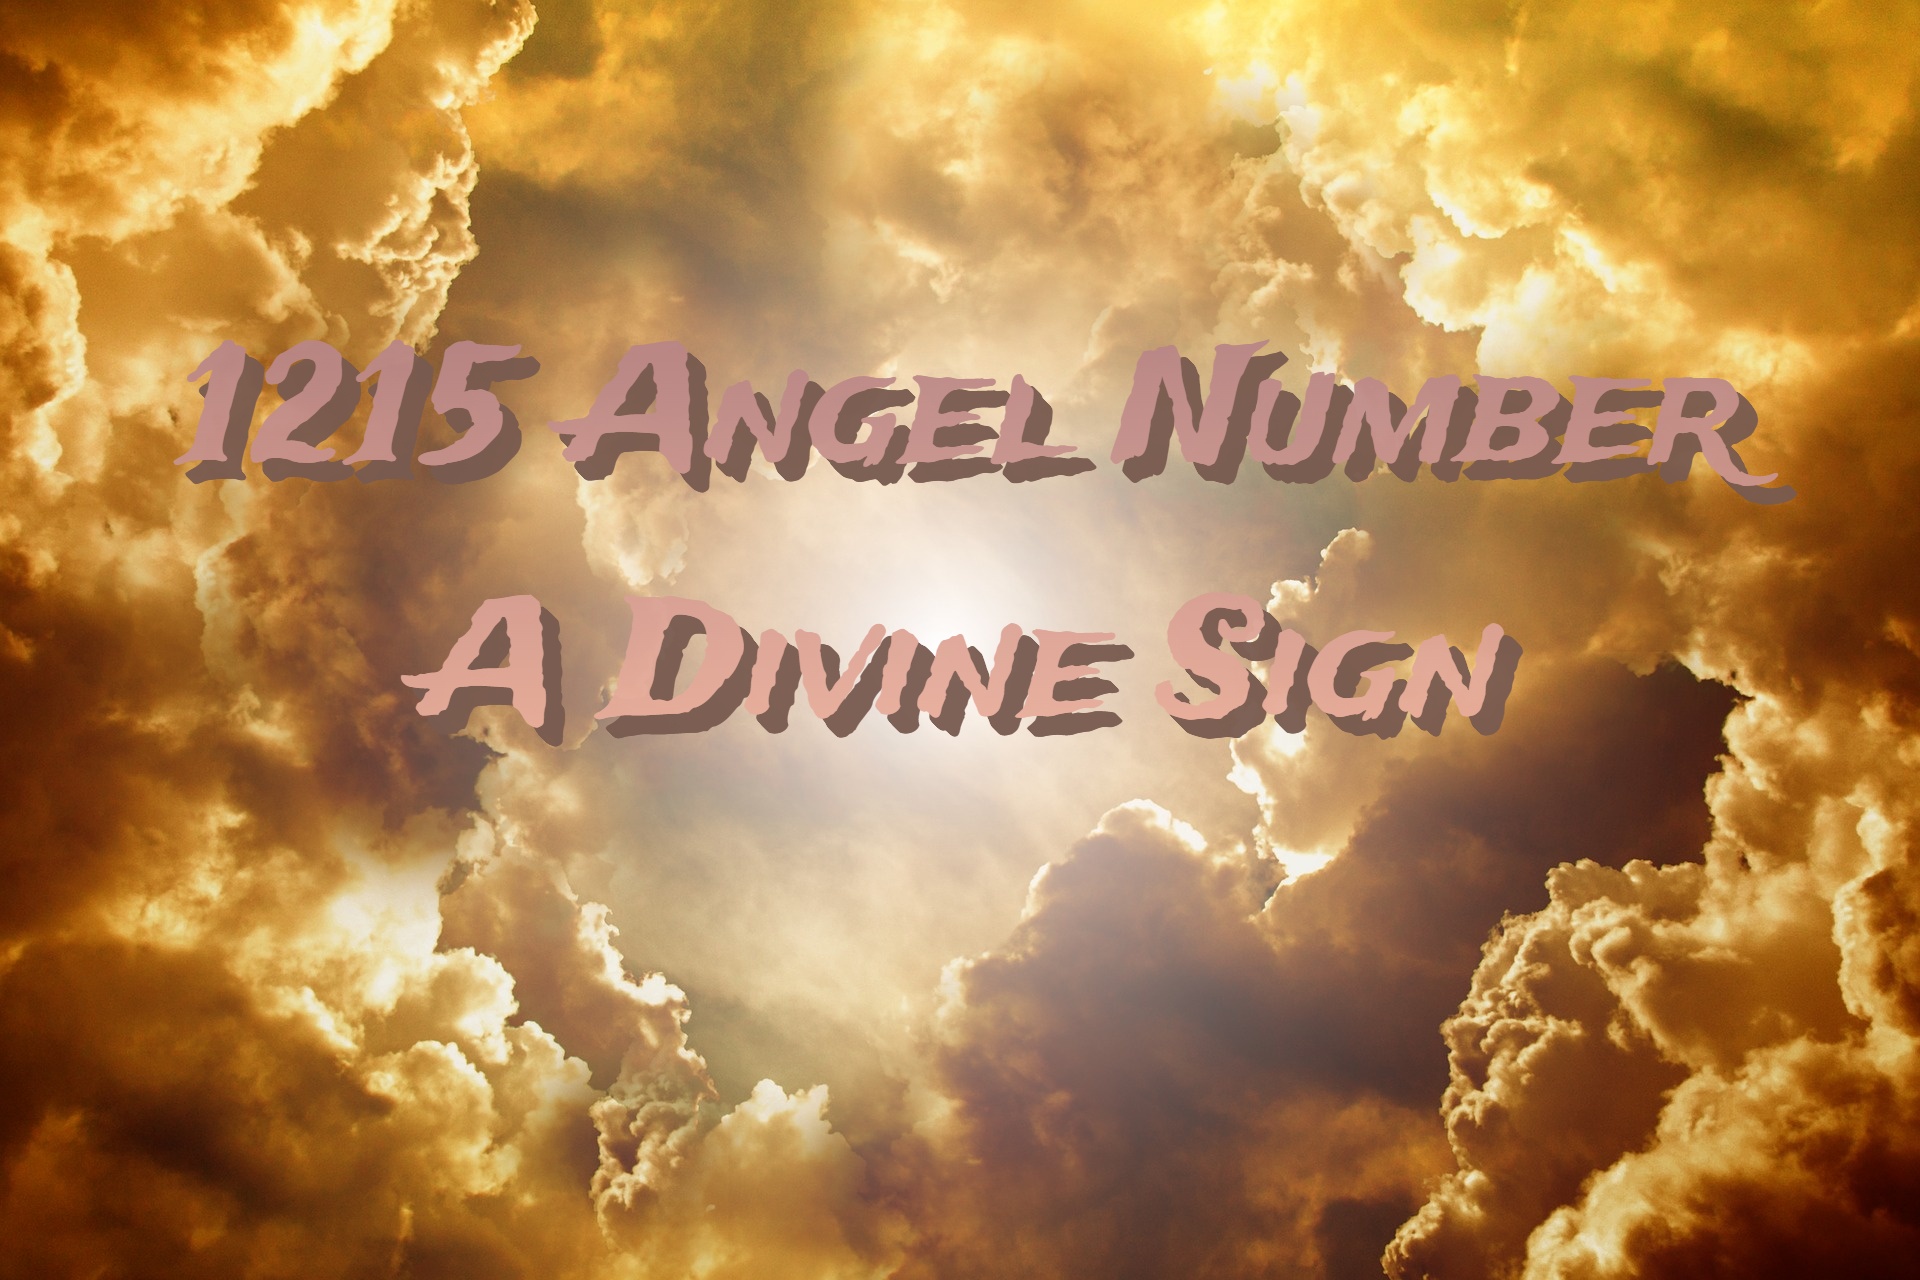 1215 Angel Number Symbolism & Interpretation - A Divine Sign